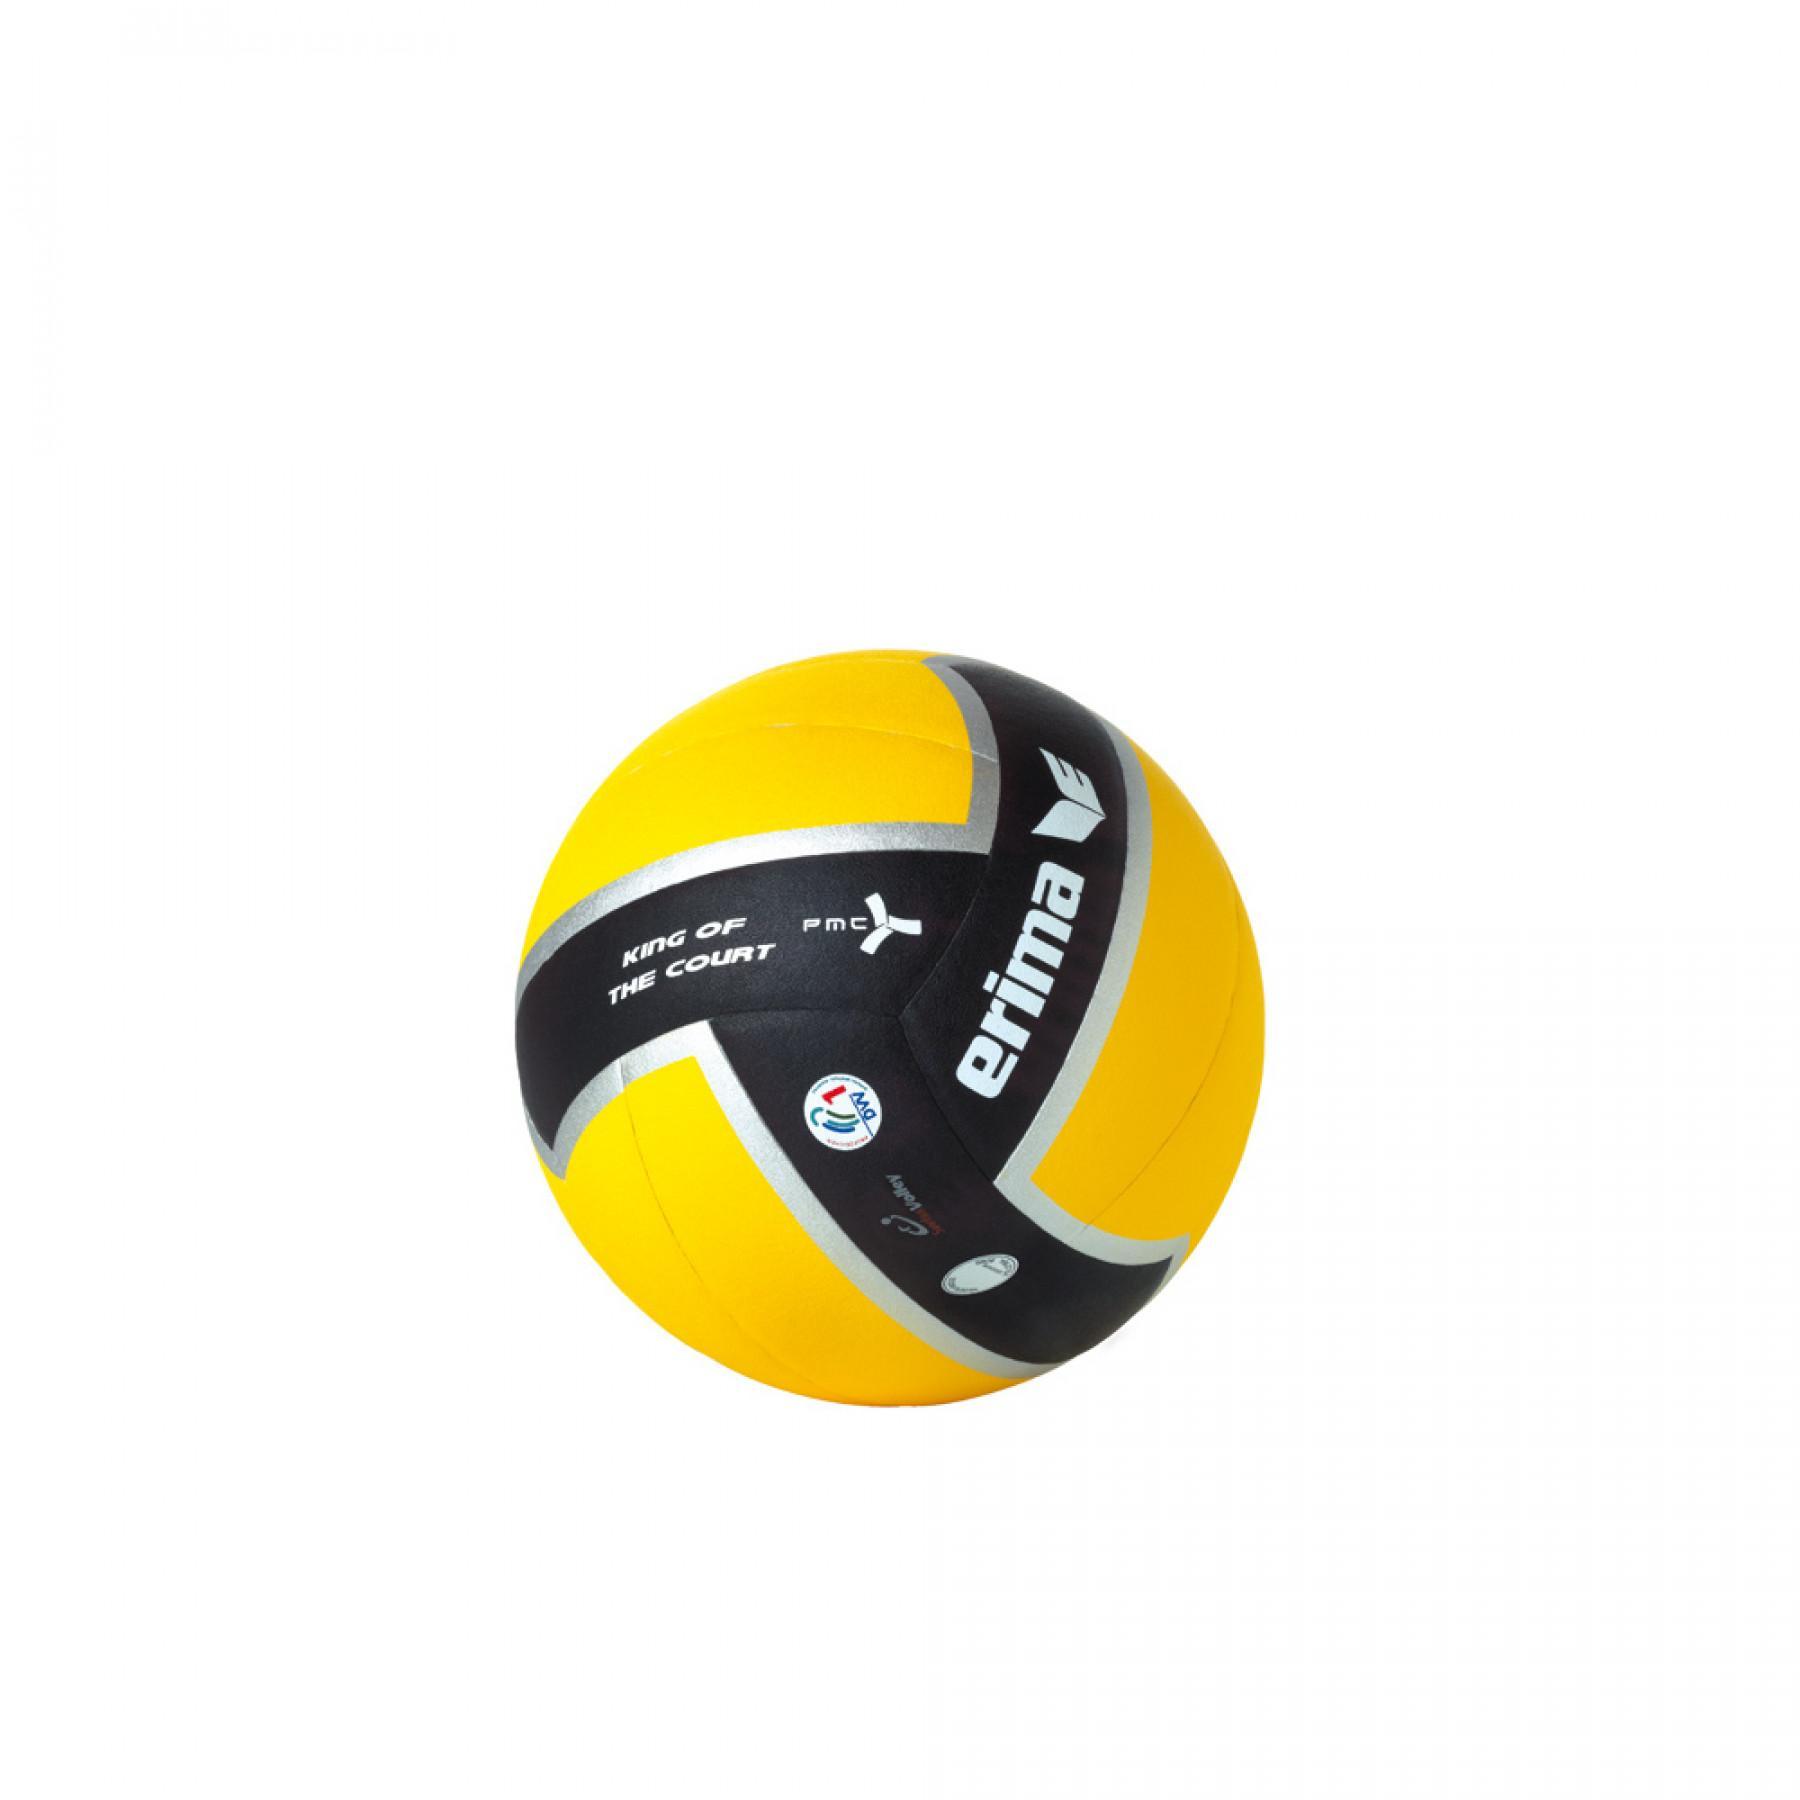 Ballon de volley Erima King of the court